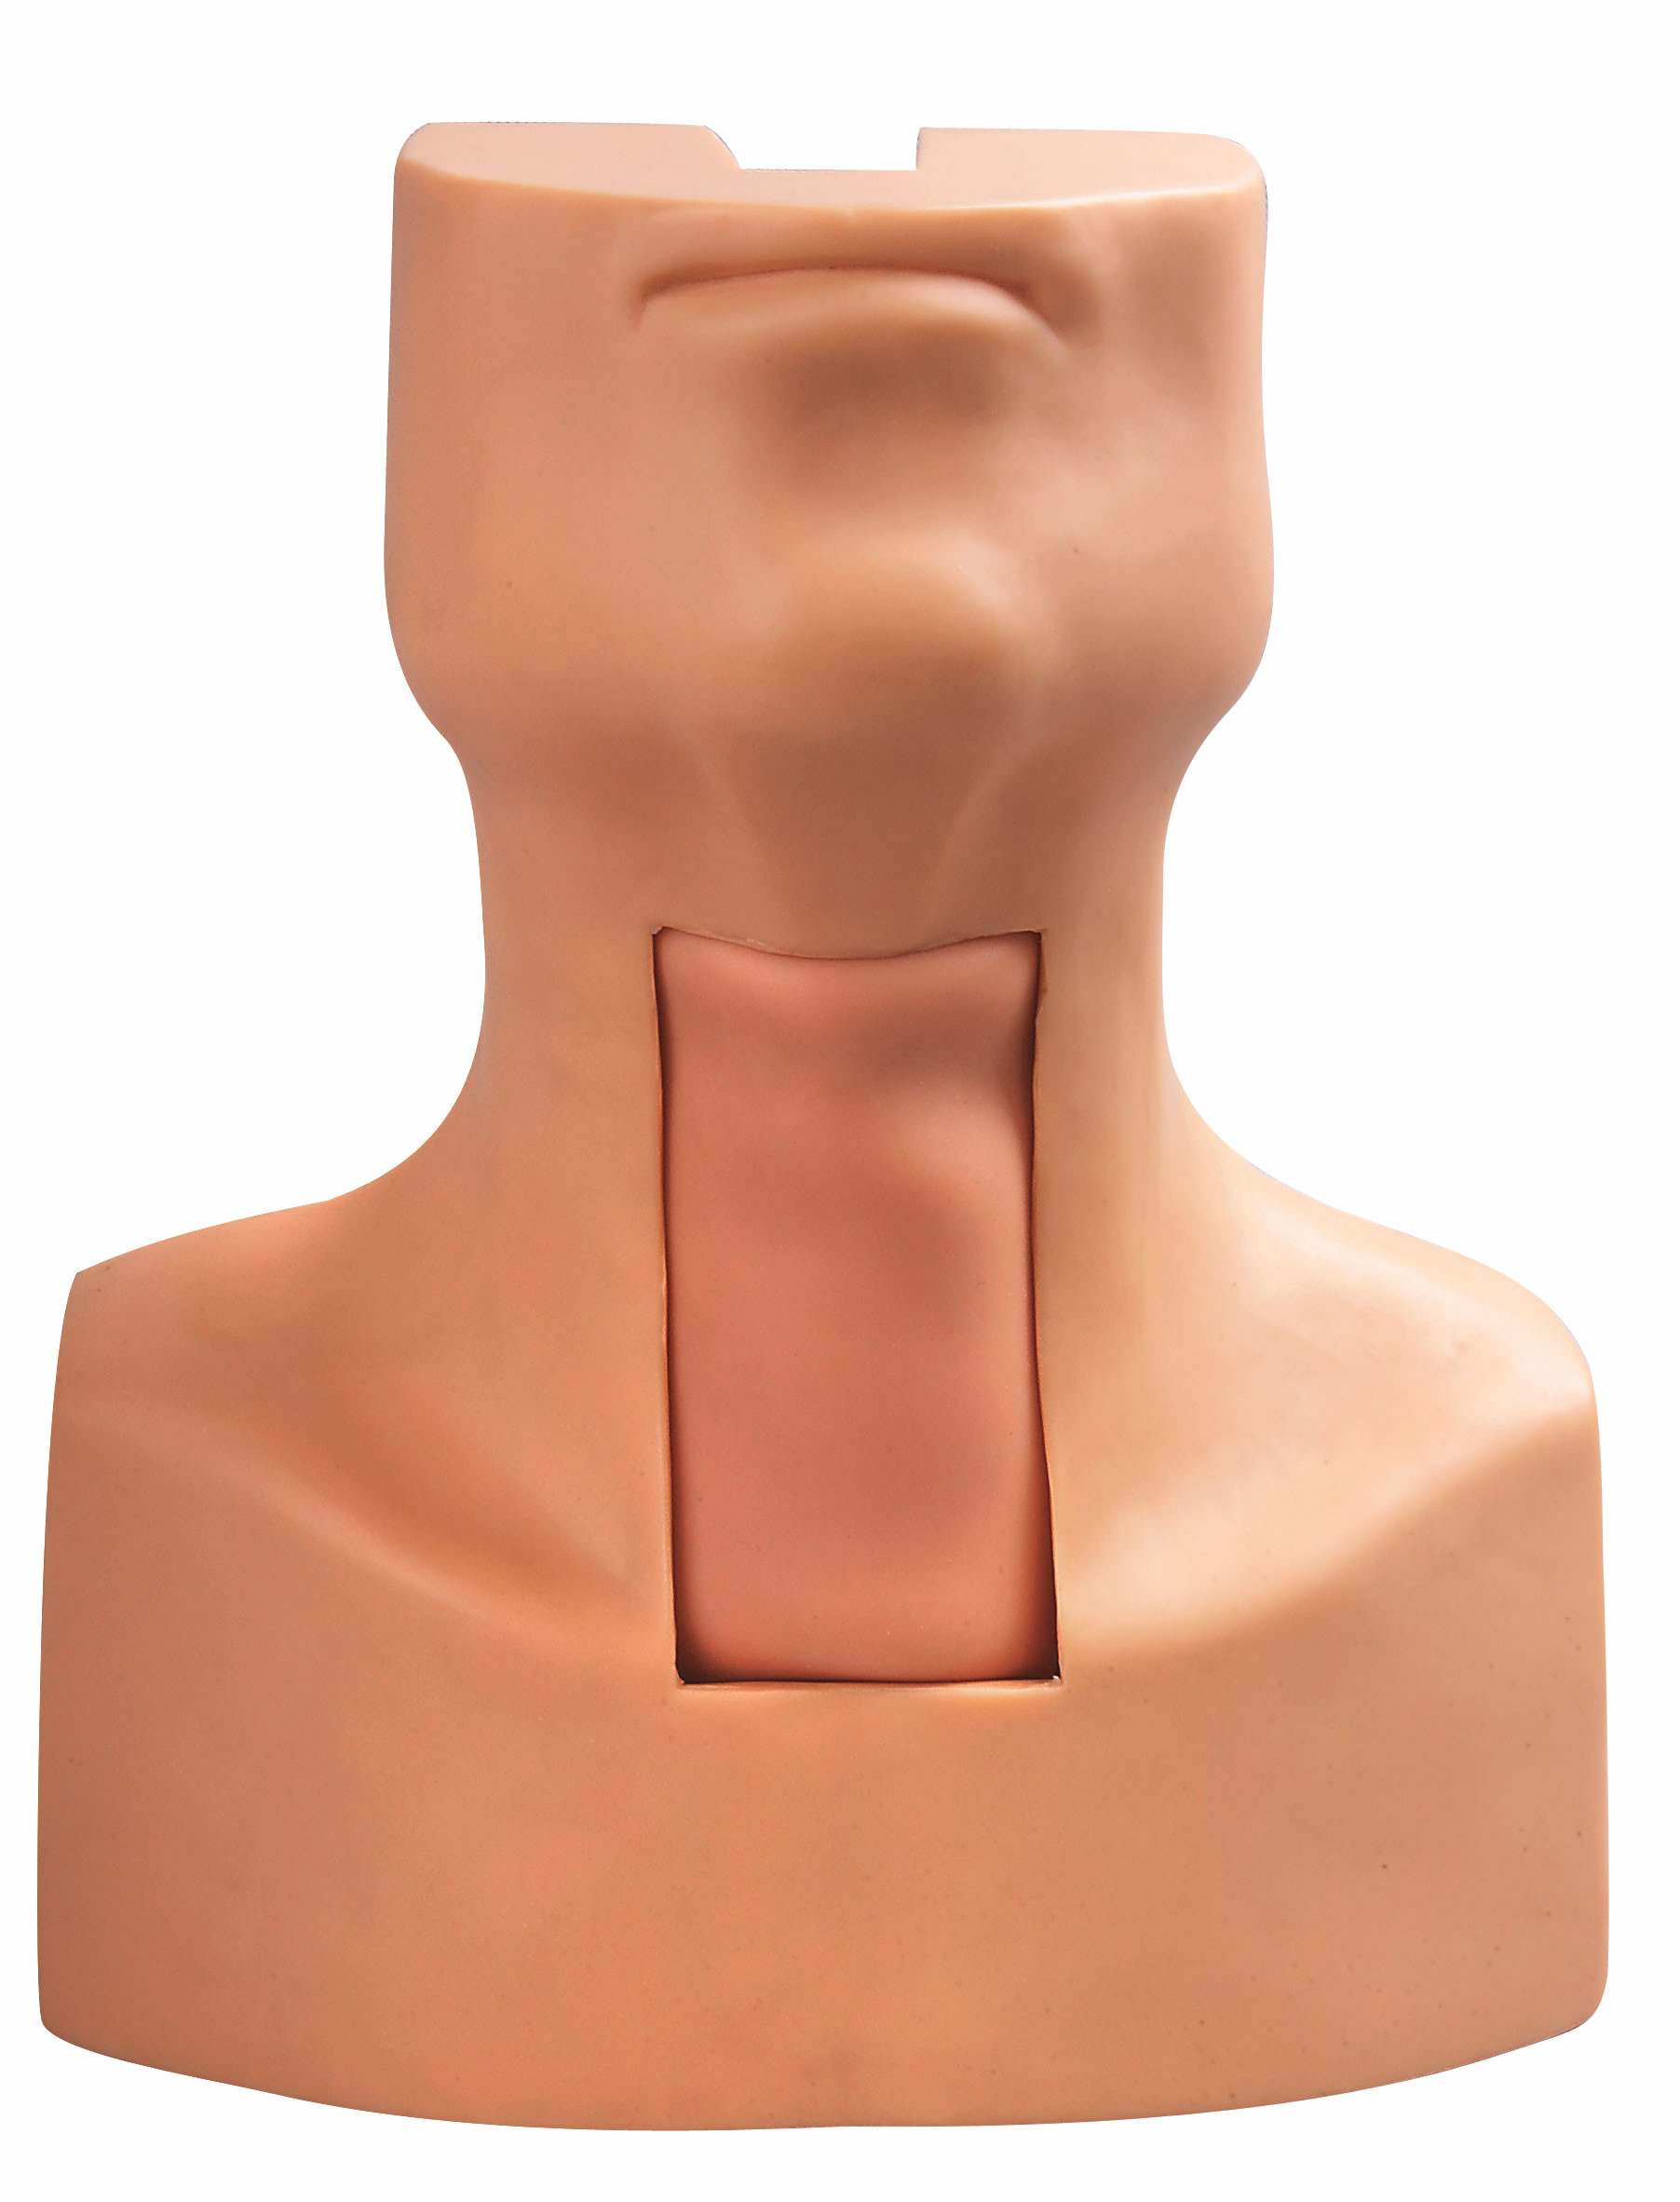 Modelo da intubação da punctura do Tracheostomy com pele simulada da traqueia e do pescoço para treinar